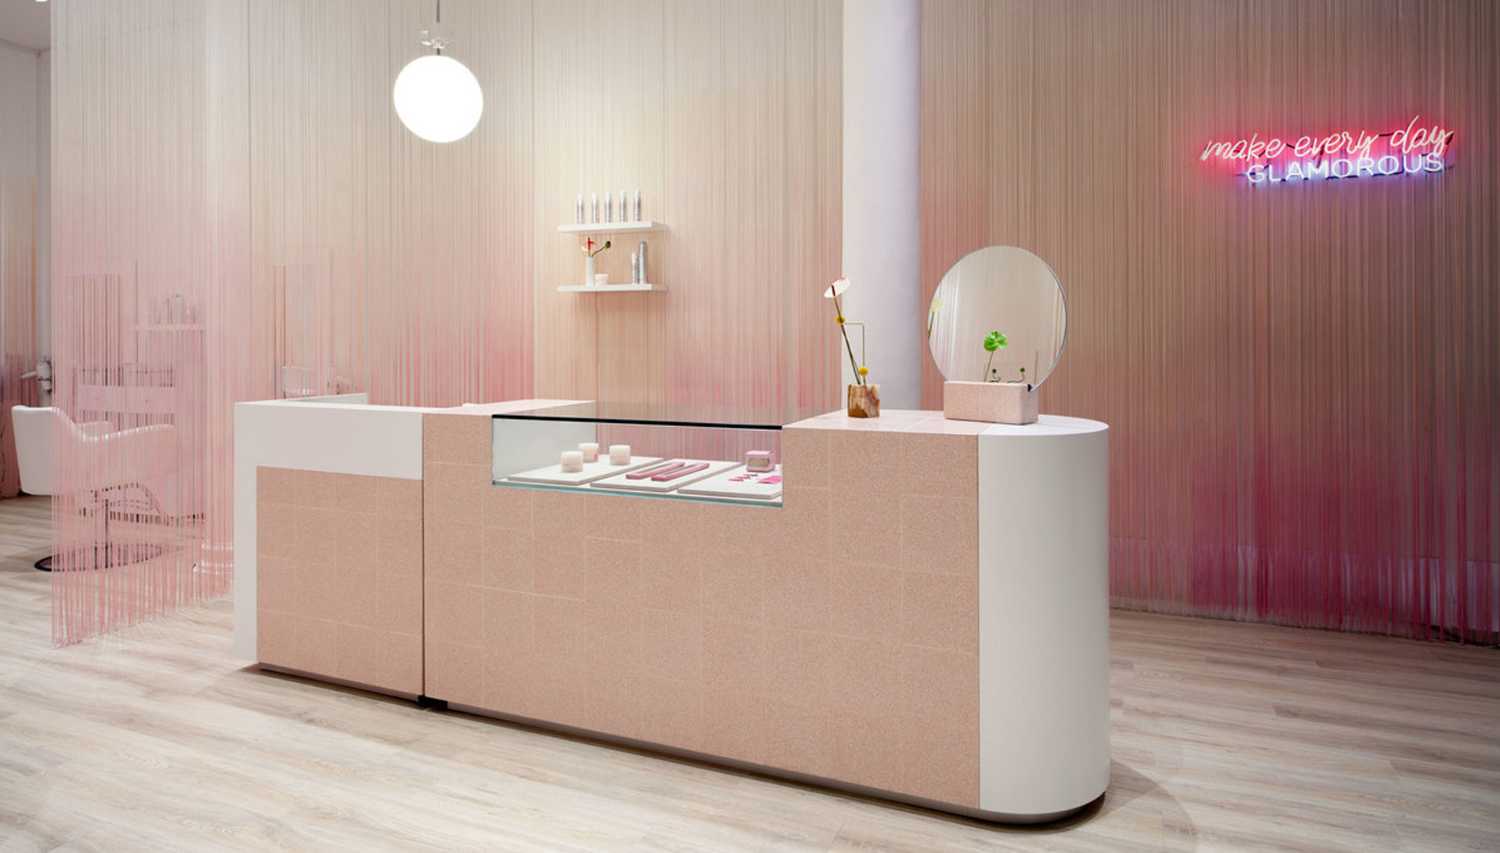 Glam Seamless: negozio elegante rosa e bianco a Soho